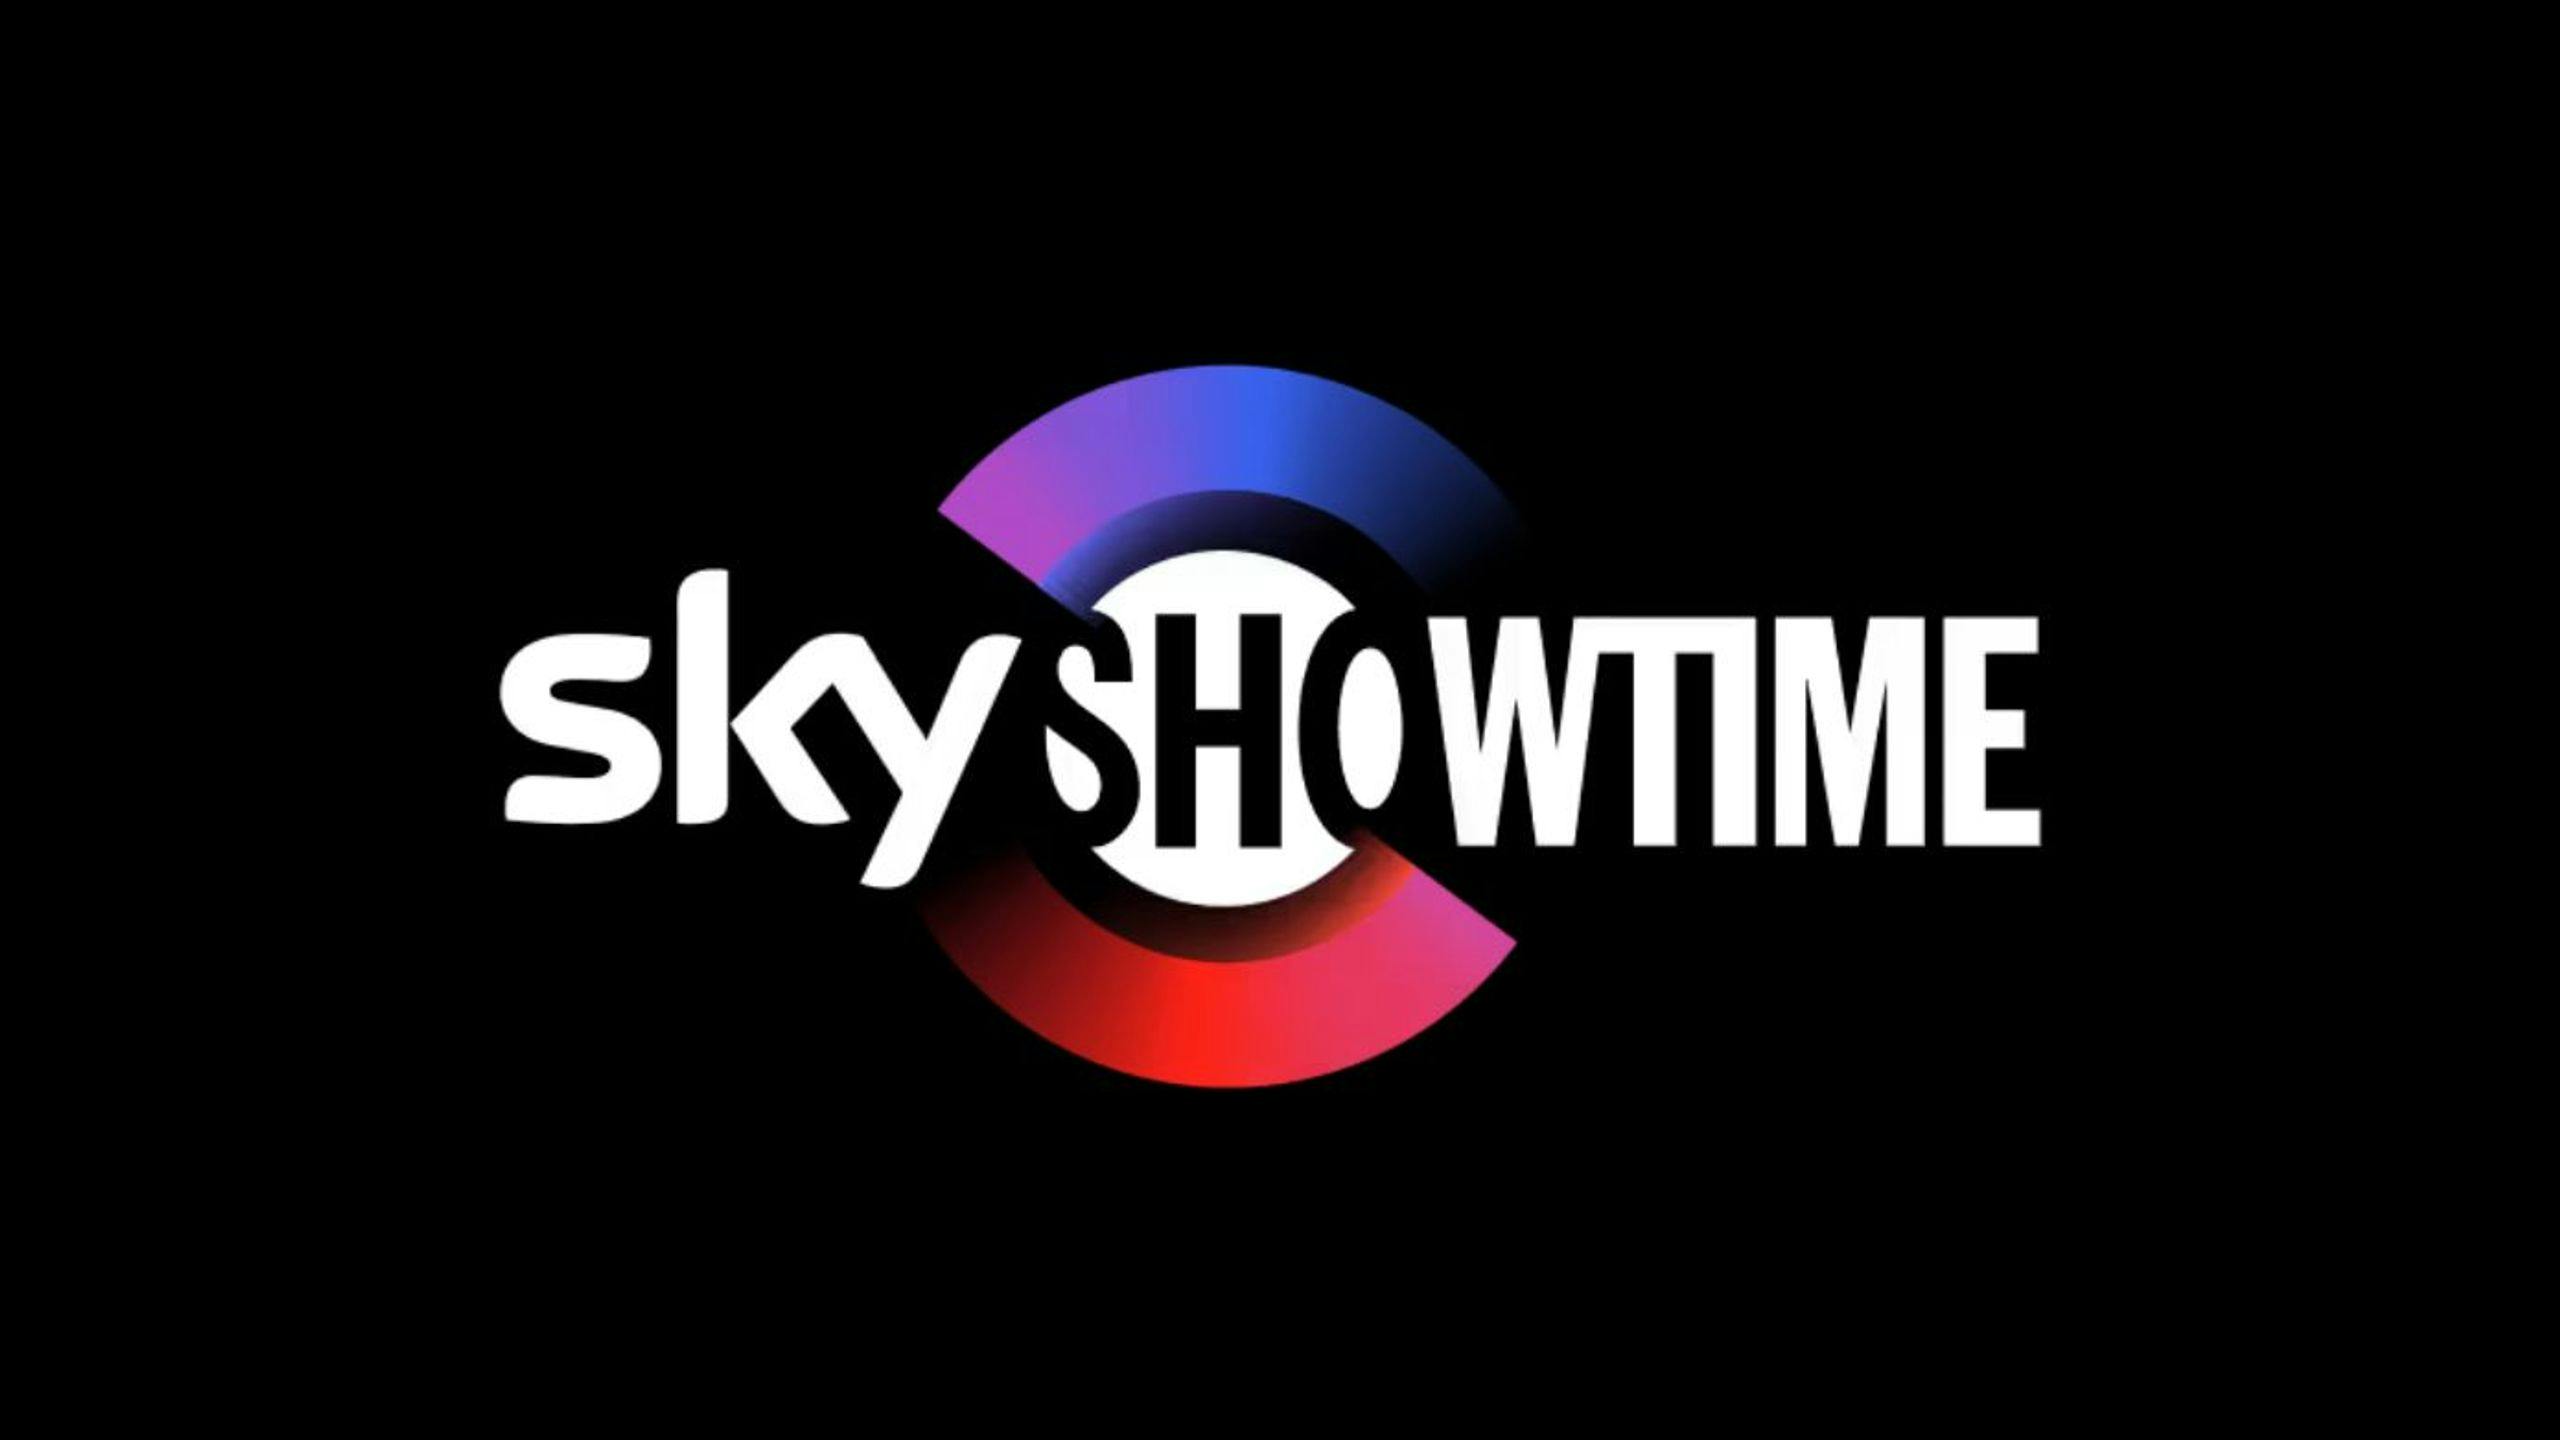 SkyShowtime llegará en febrero a España